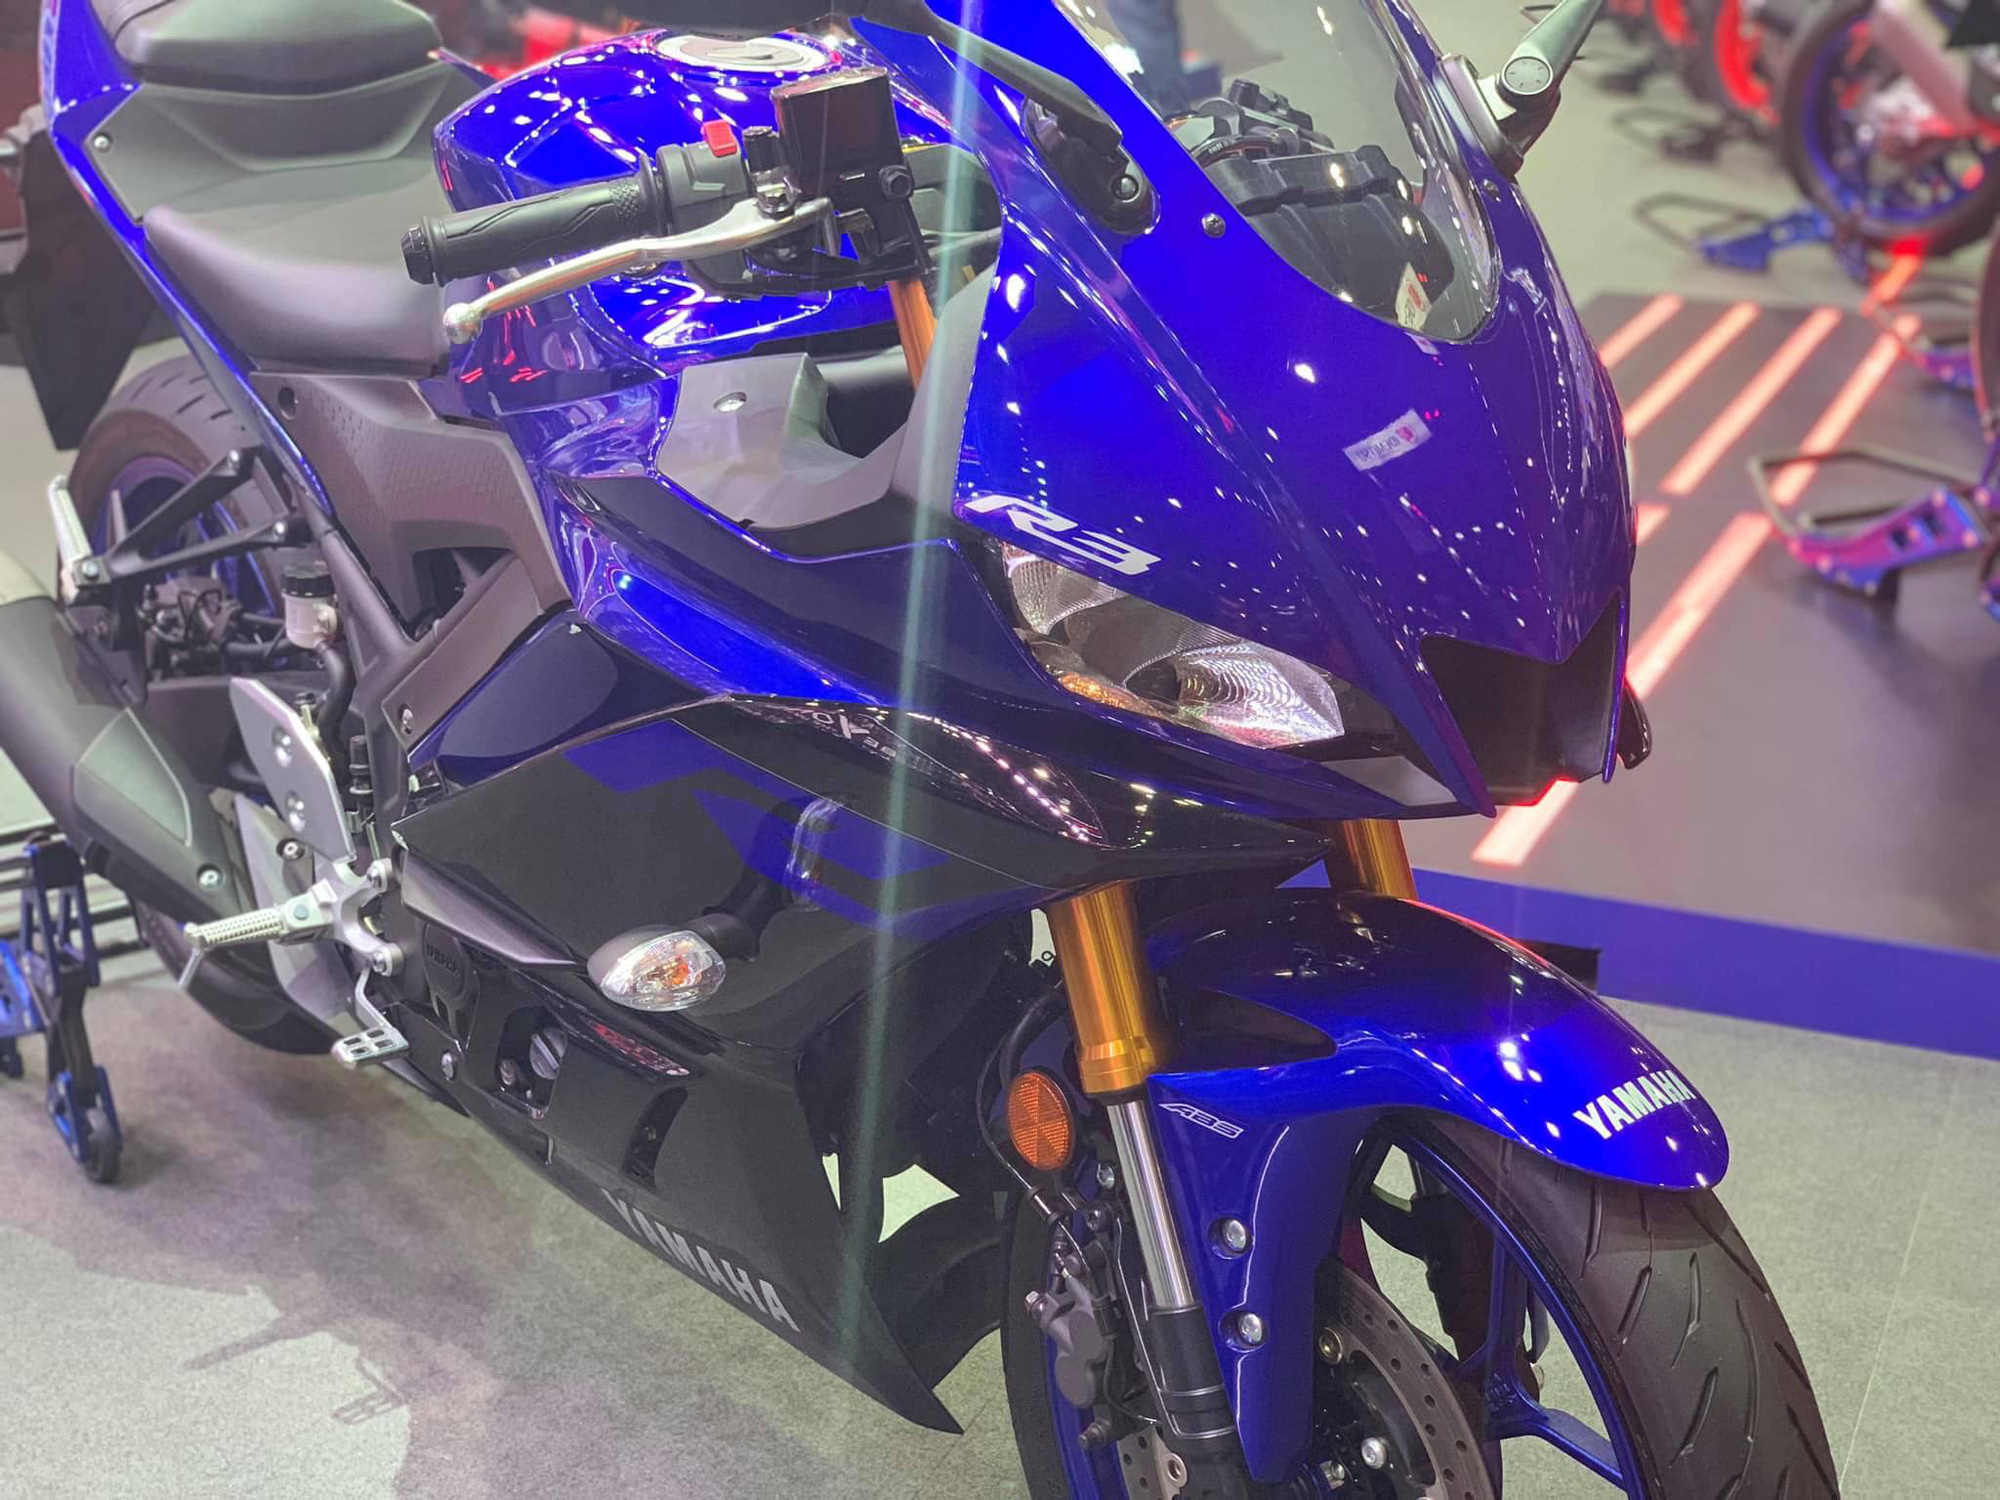 Yamaha R3 2020 về Việt Nam với giá giảm sốc còn 129 triệu đồng, thêm trang bị mà nhiều biker ao ước - Ảnh 1.